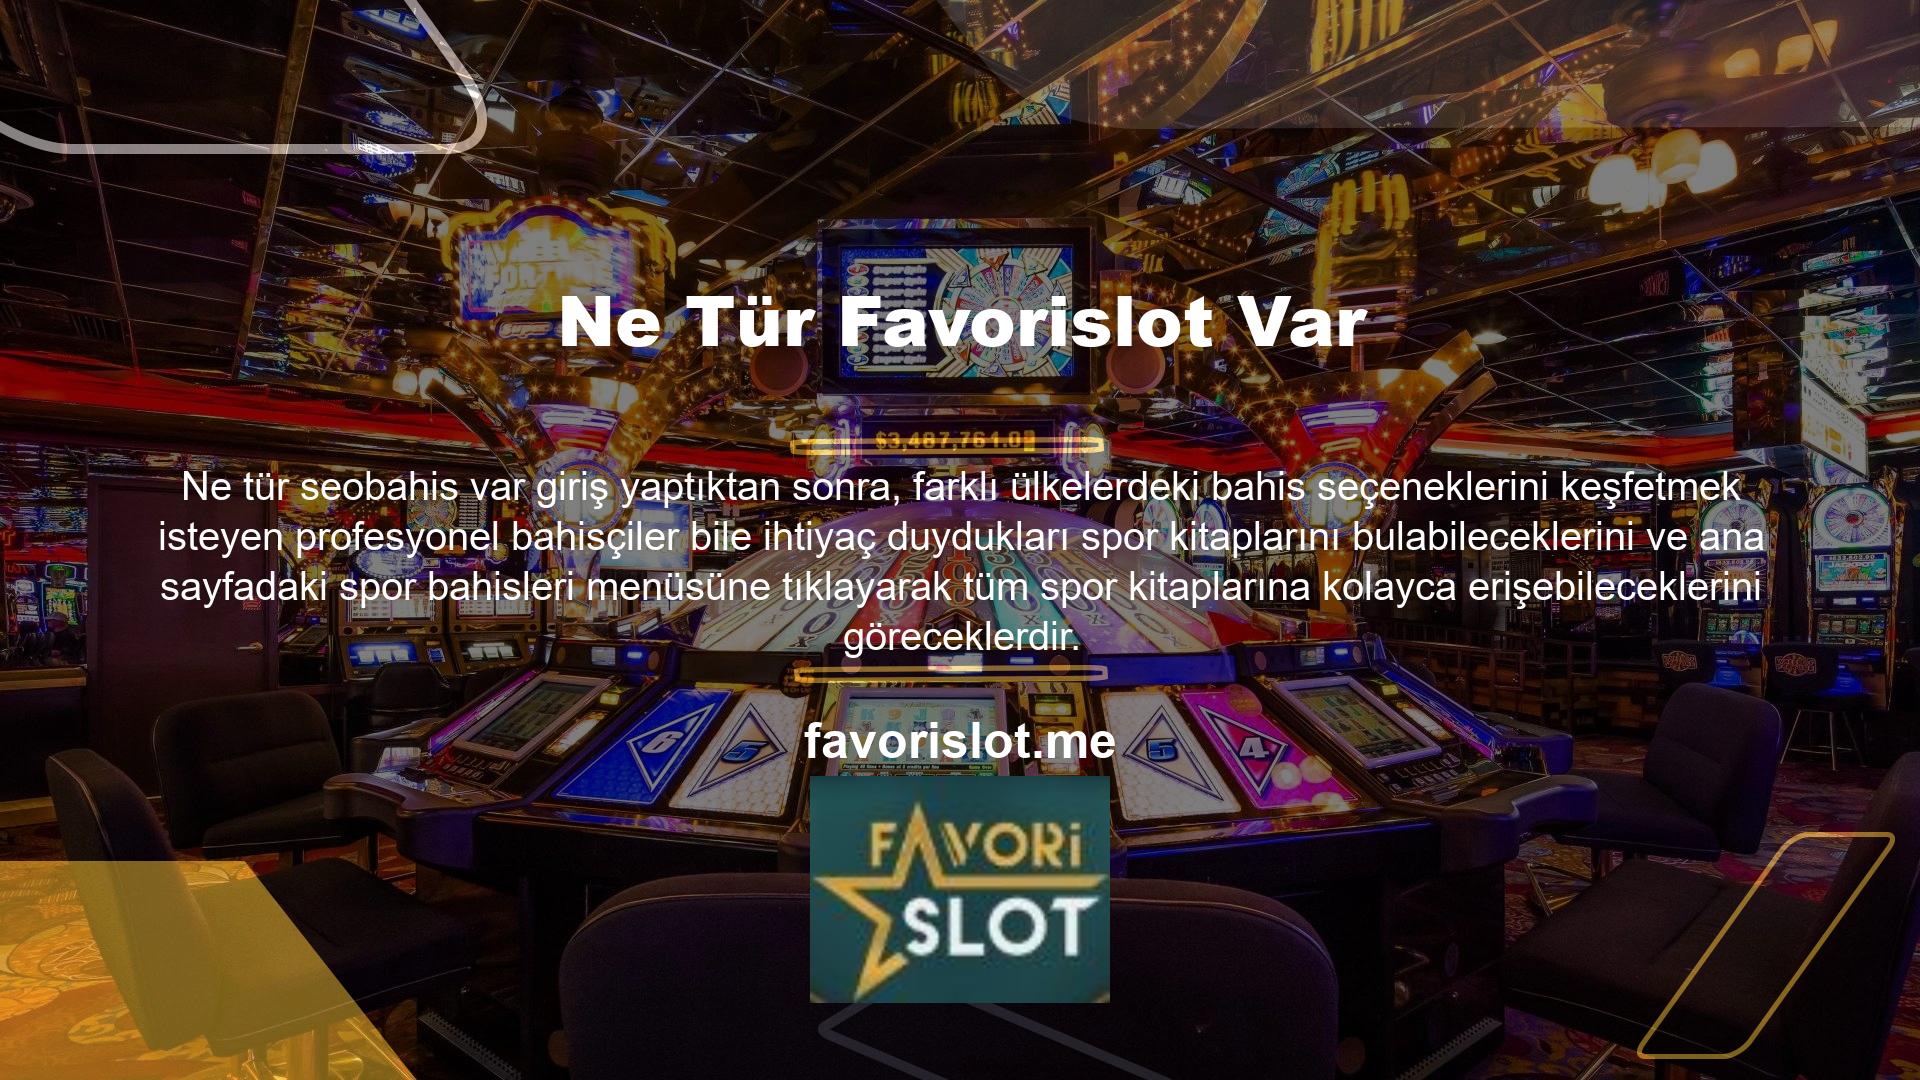 Favorislot giriş sayfasını ziyaret edip profilinize giriş yaparak sitedeki canlı casinolar, diğer kategoriler ve spor bahislerine bahis yapabilirsiniz